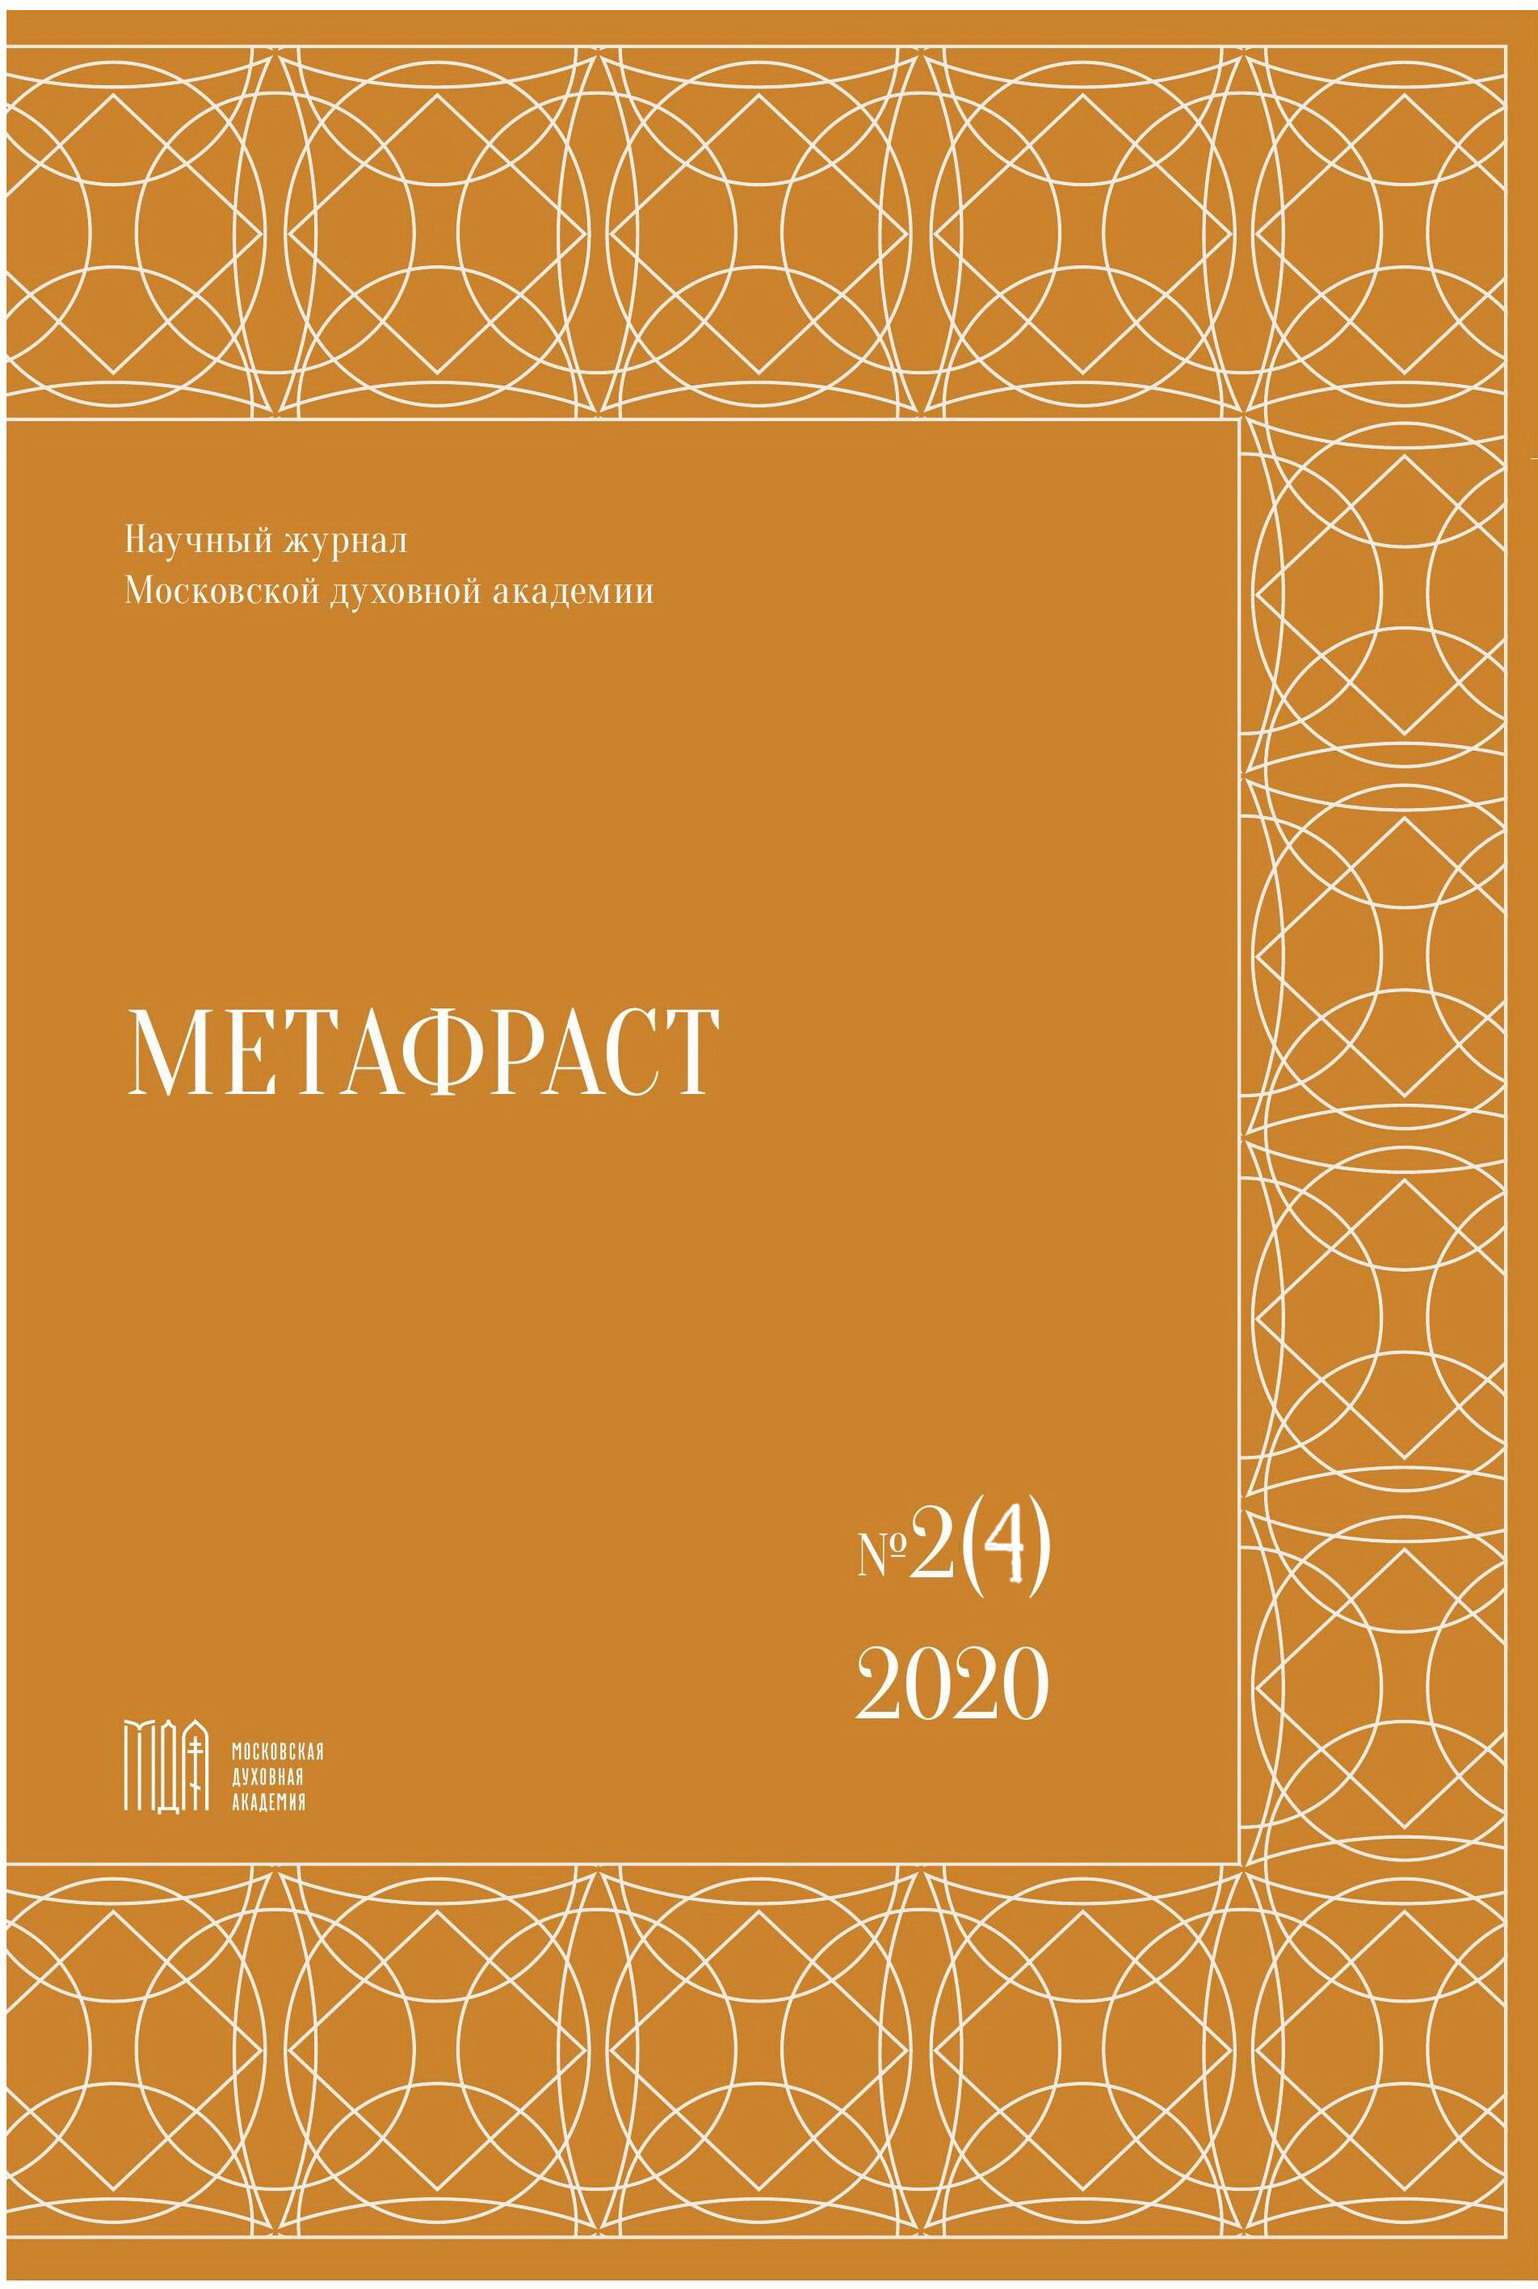 					Показать № 2 (4) (2020): Метафраст
				